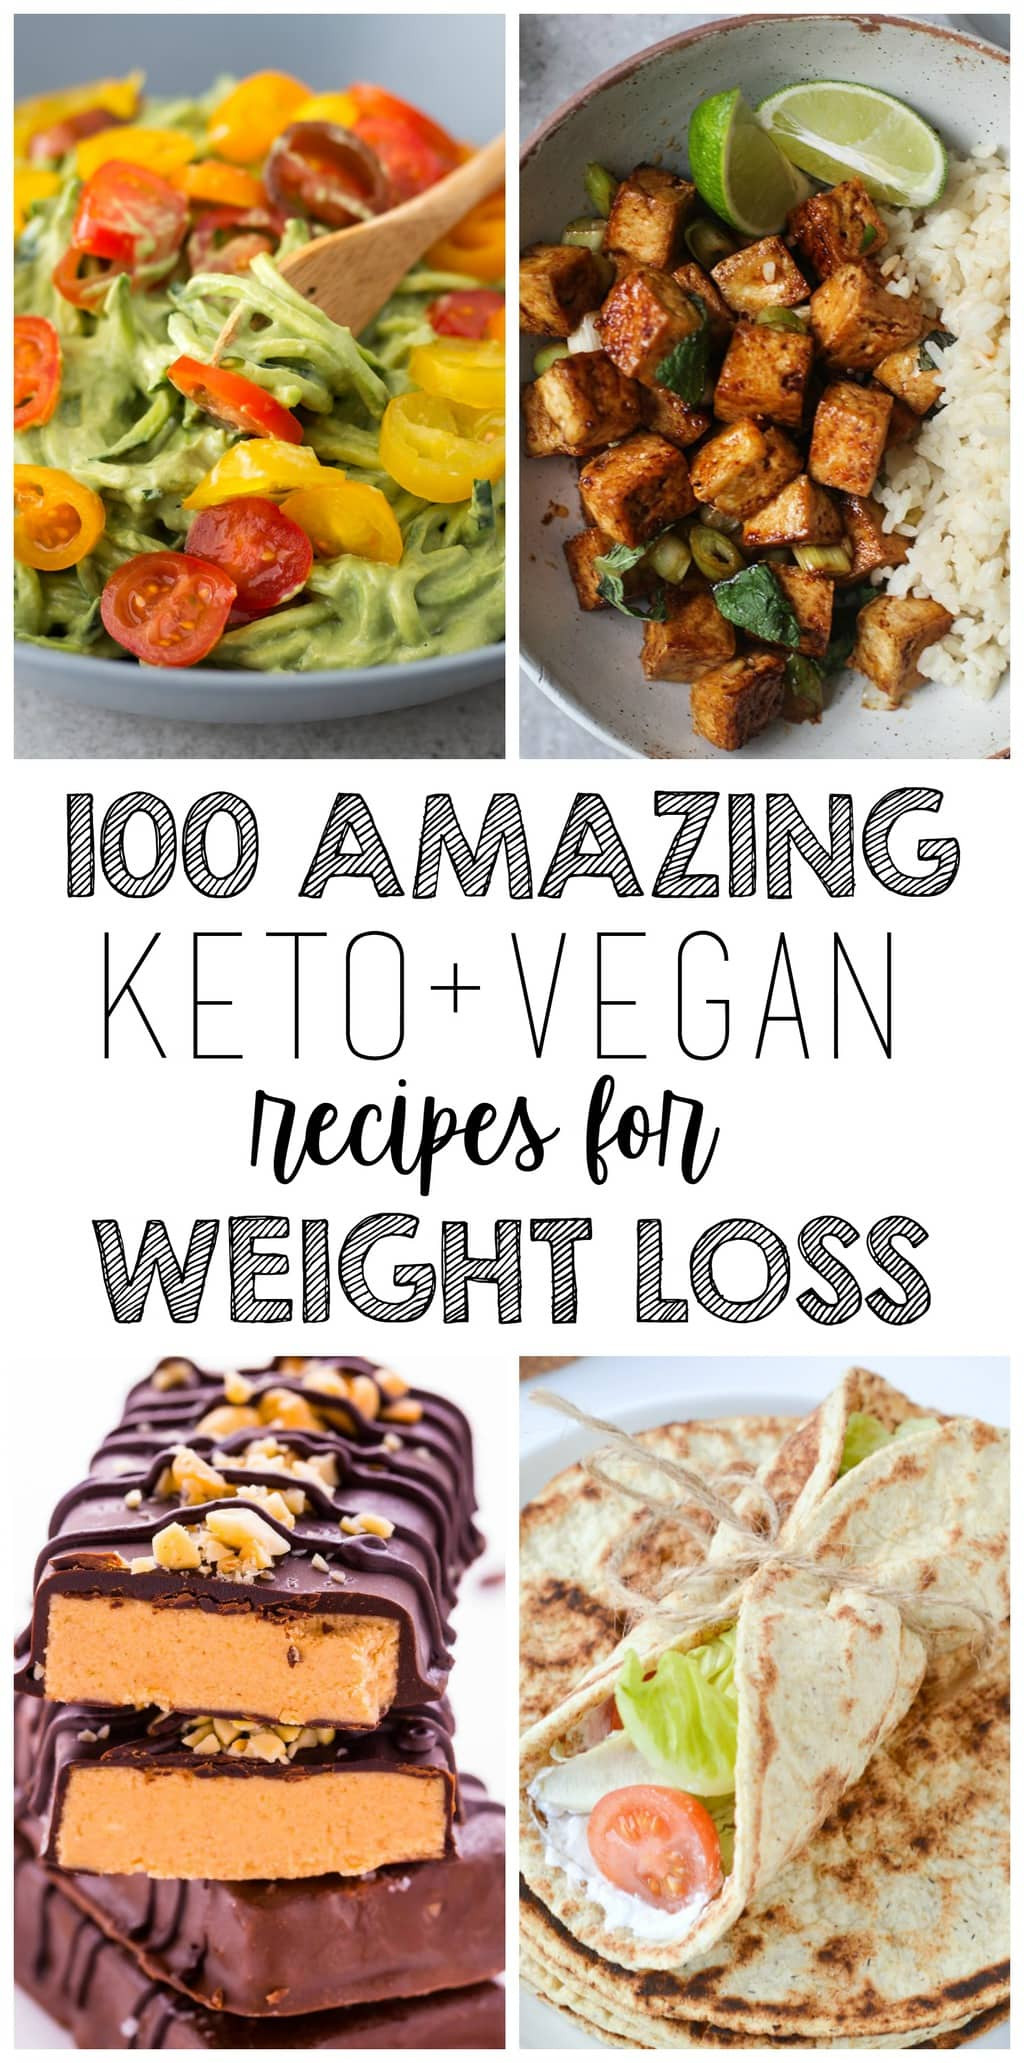 Keto Diet For Vegans
 100 AMAZING Keto Vegan Recipes For Weight Loss